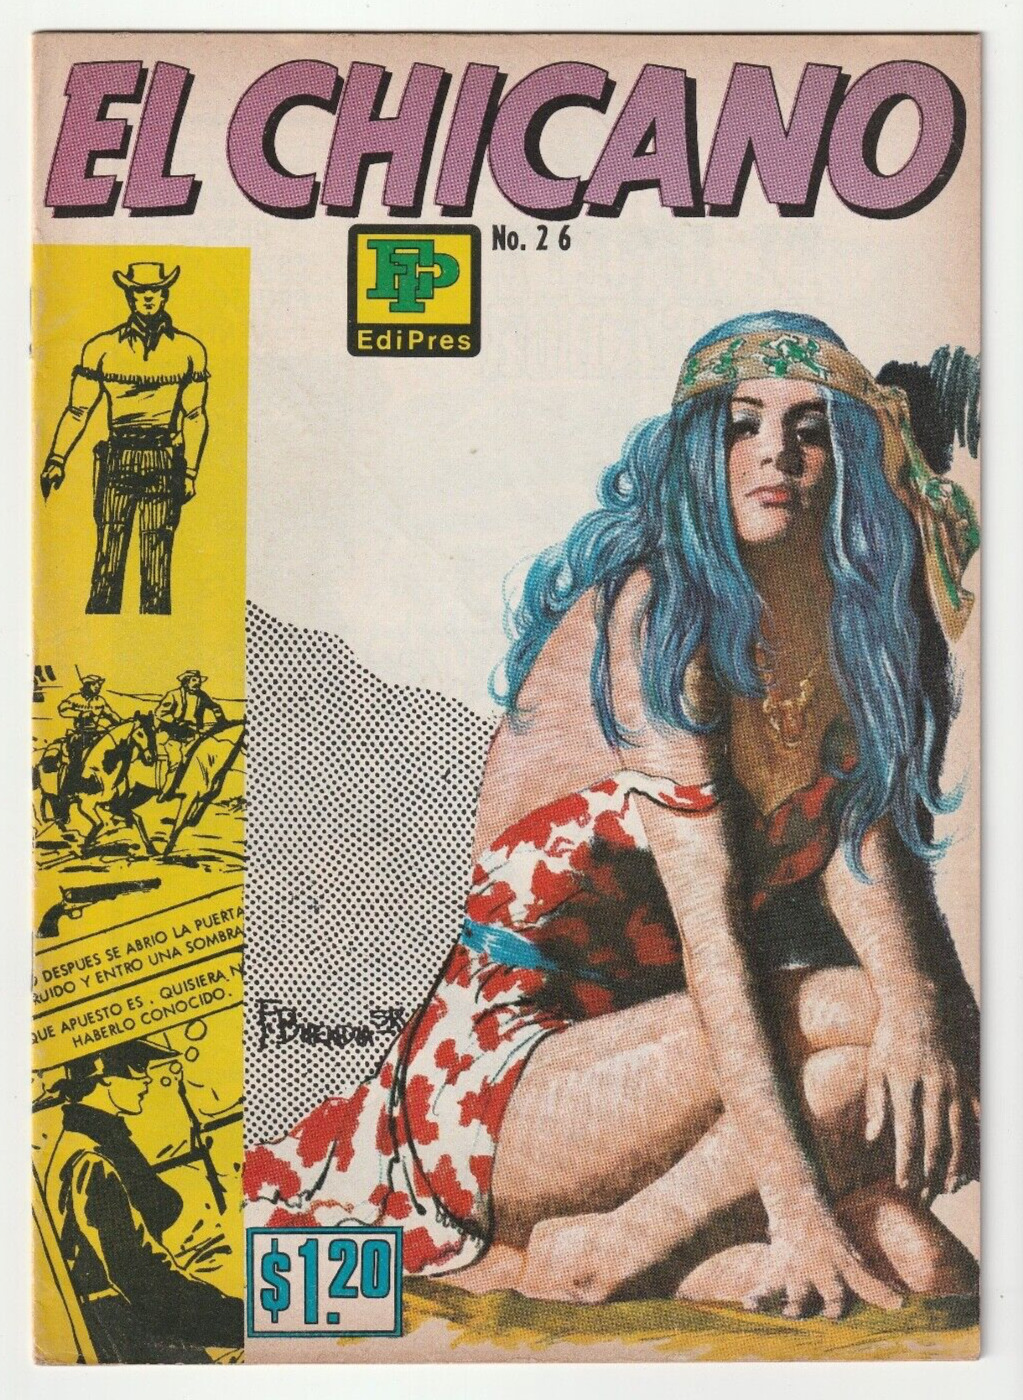 El Chicano #26 - Mexican Spicy Western - Edipress Mexico 1972